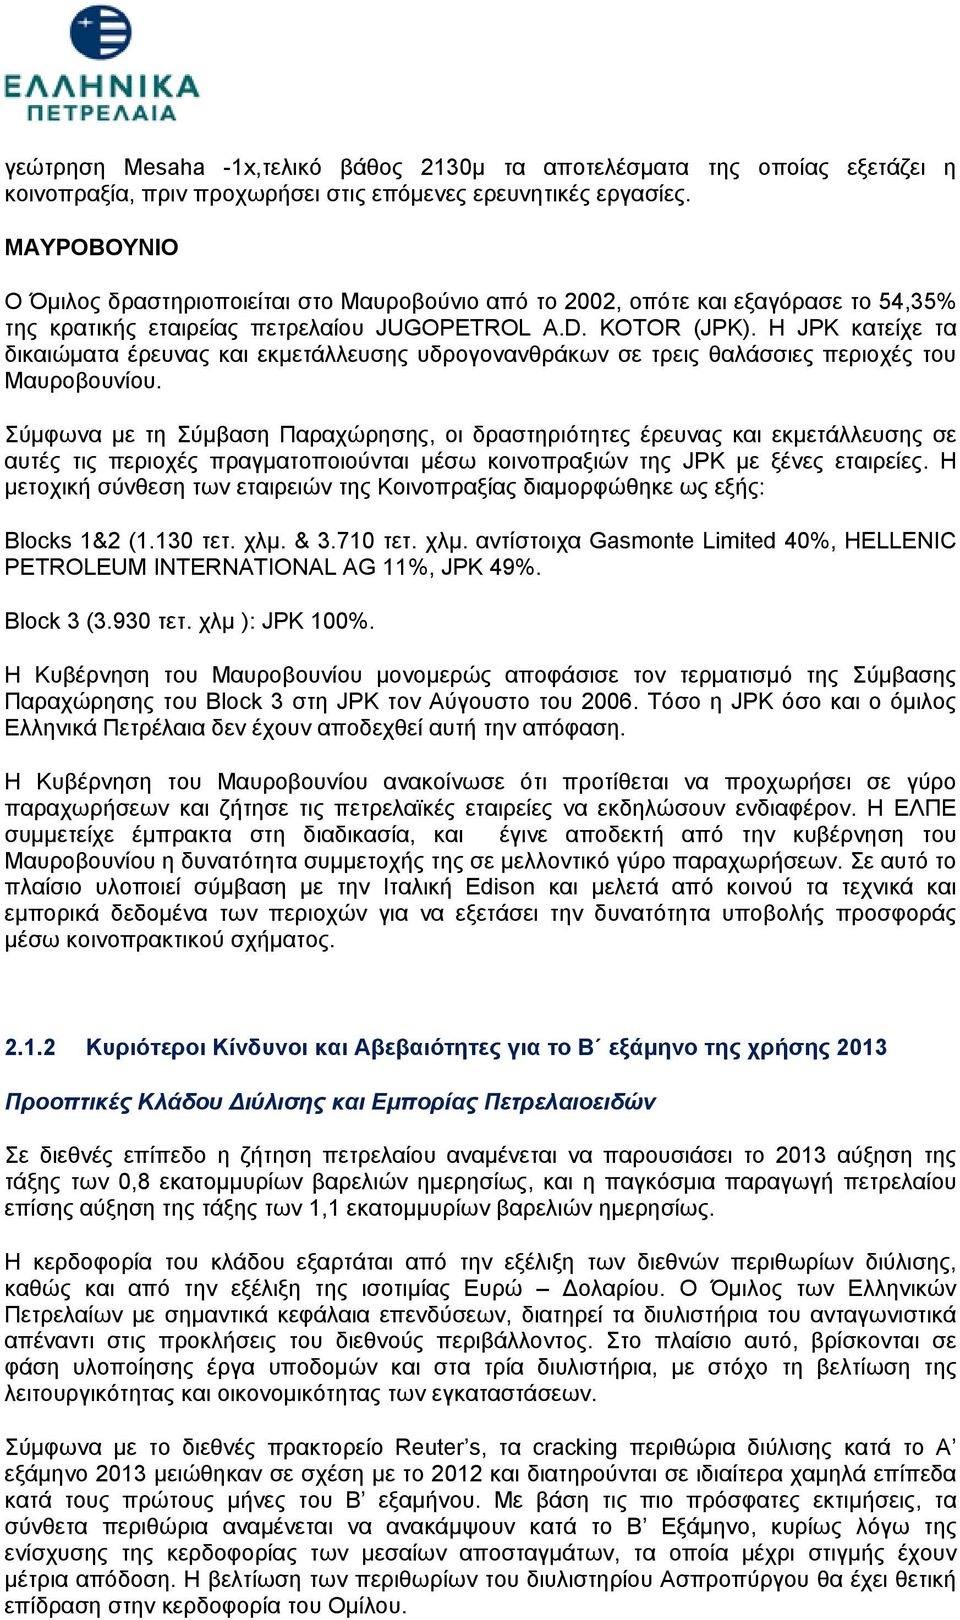 Η JPK κατείχε τα δικαιώματα έρευνας και εκμετάλλευσης υδρογονανθράκων σε τρεις θαλάσσιες περιοχές του Μαυροβουνίου.